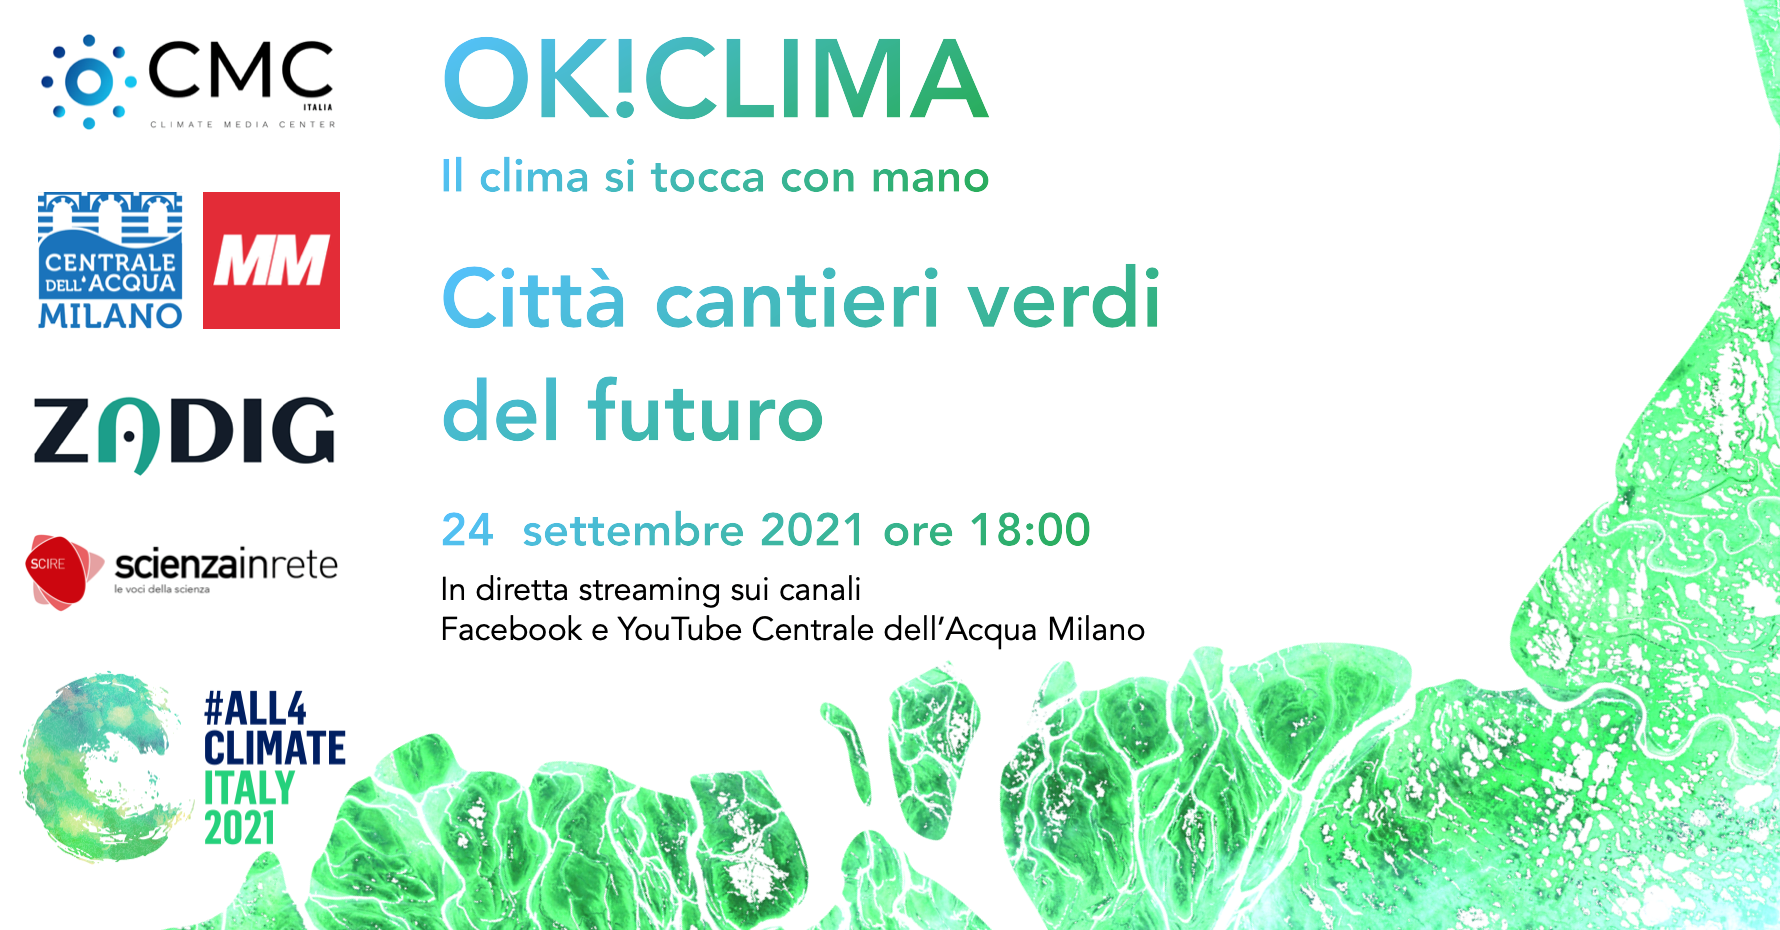 OK!CLIMA - Il clima si tocca con mano #4 "Città, cantieri verdi del futuro"